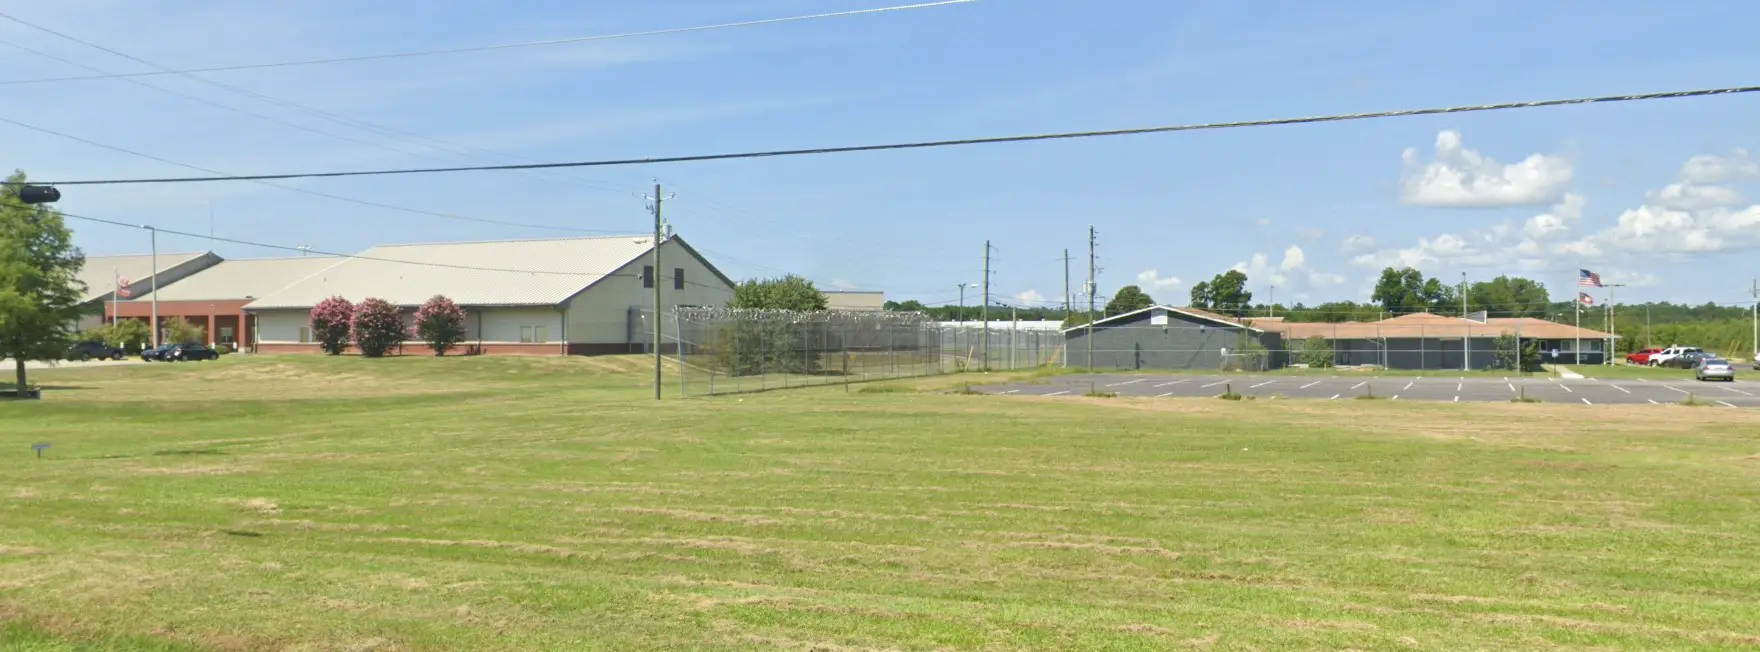 Photos Augusta Regional Youth Detention Center 3